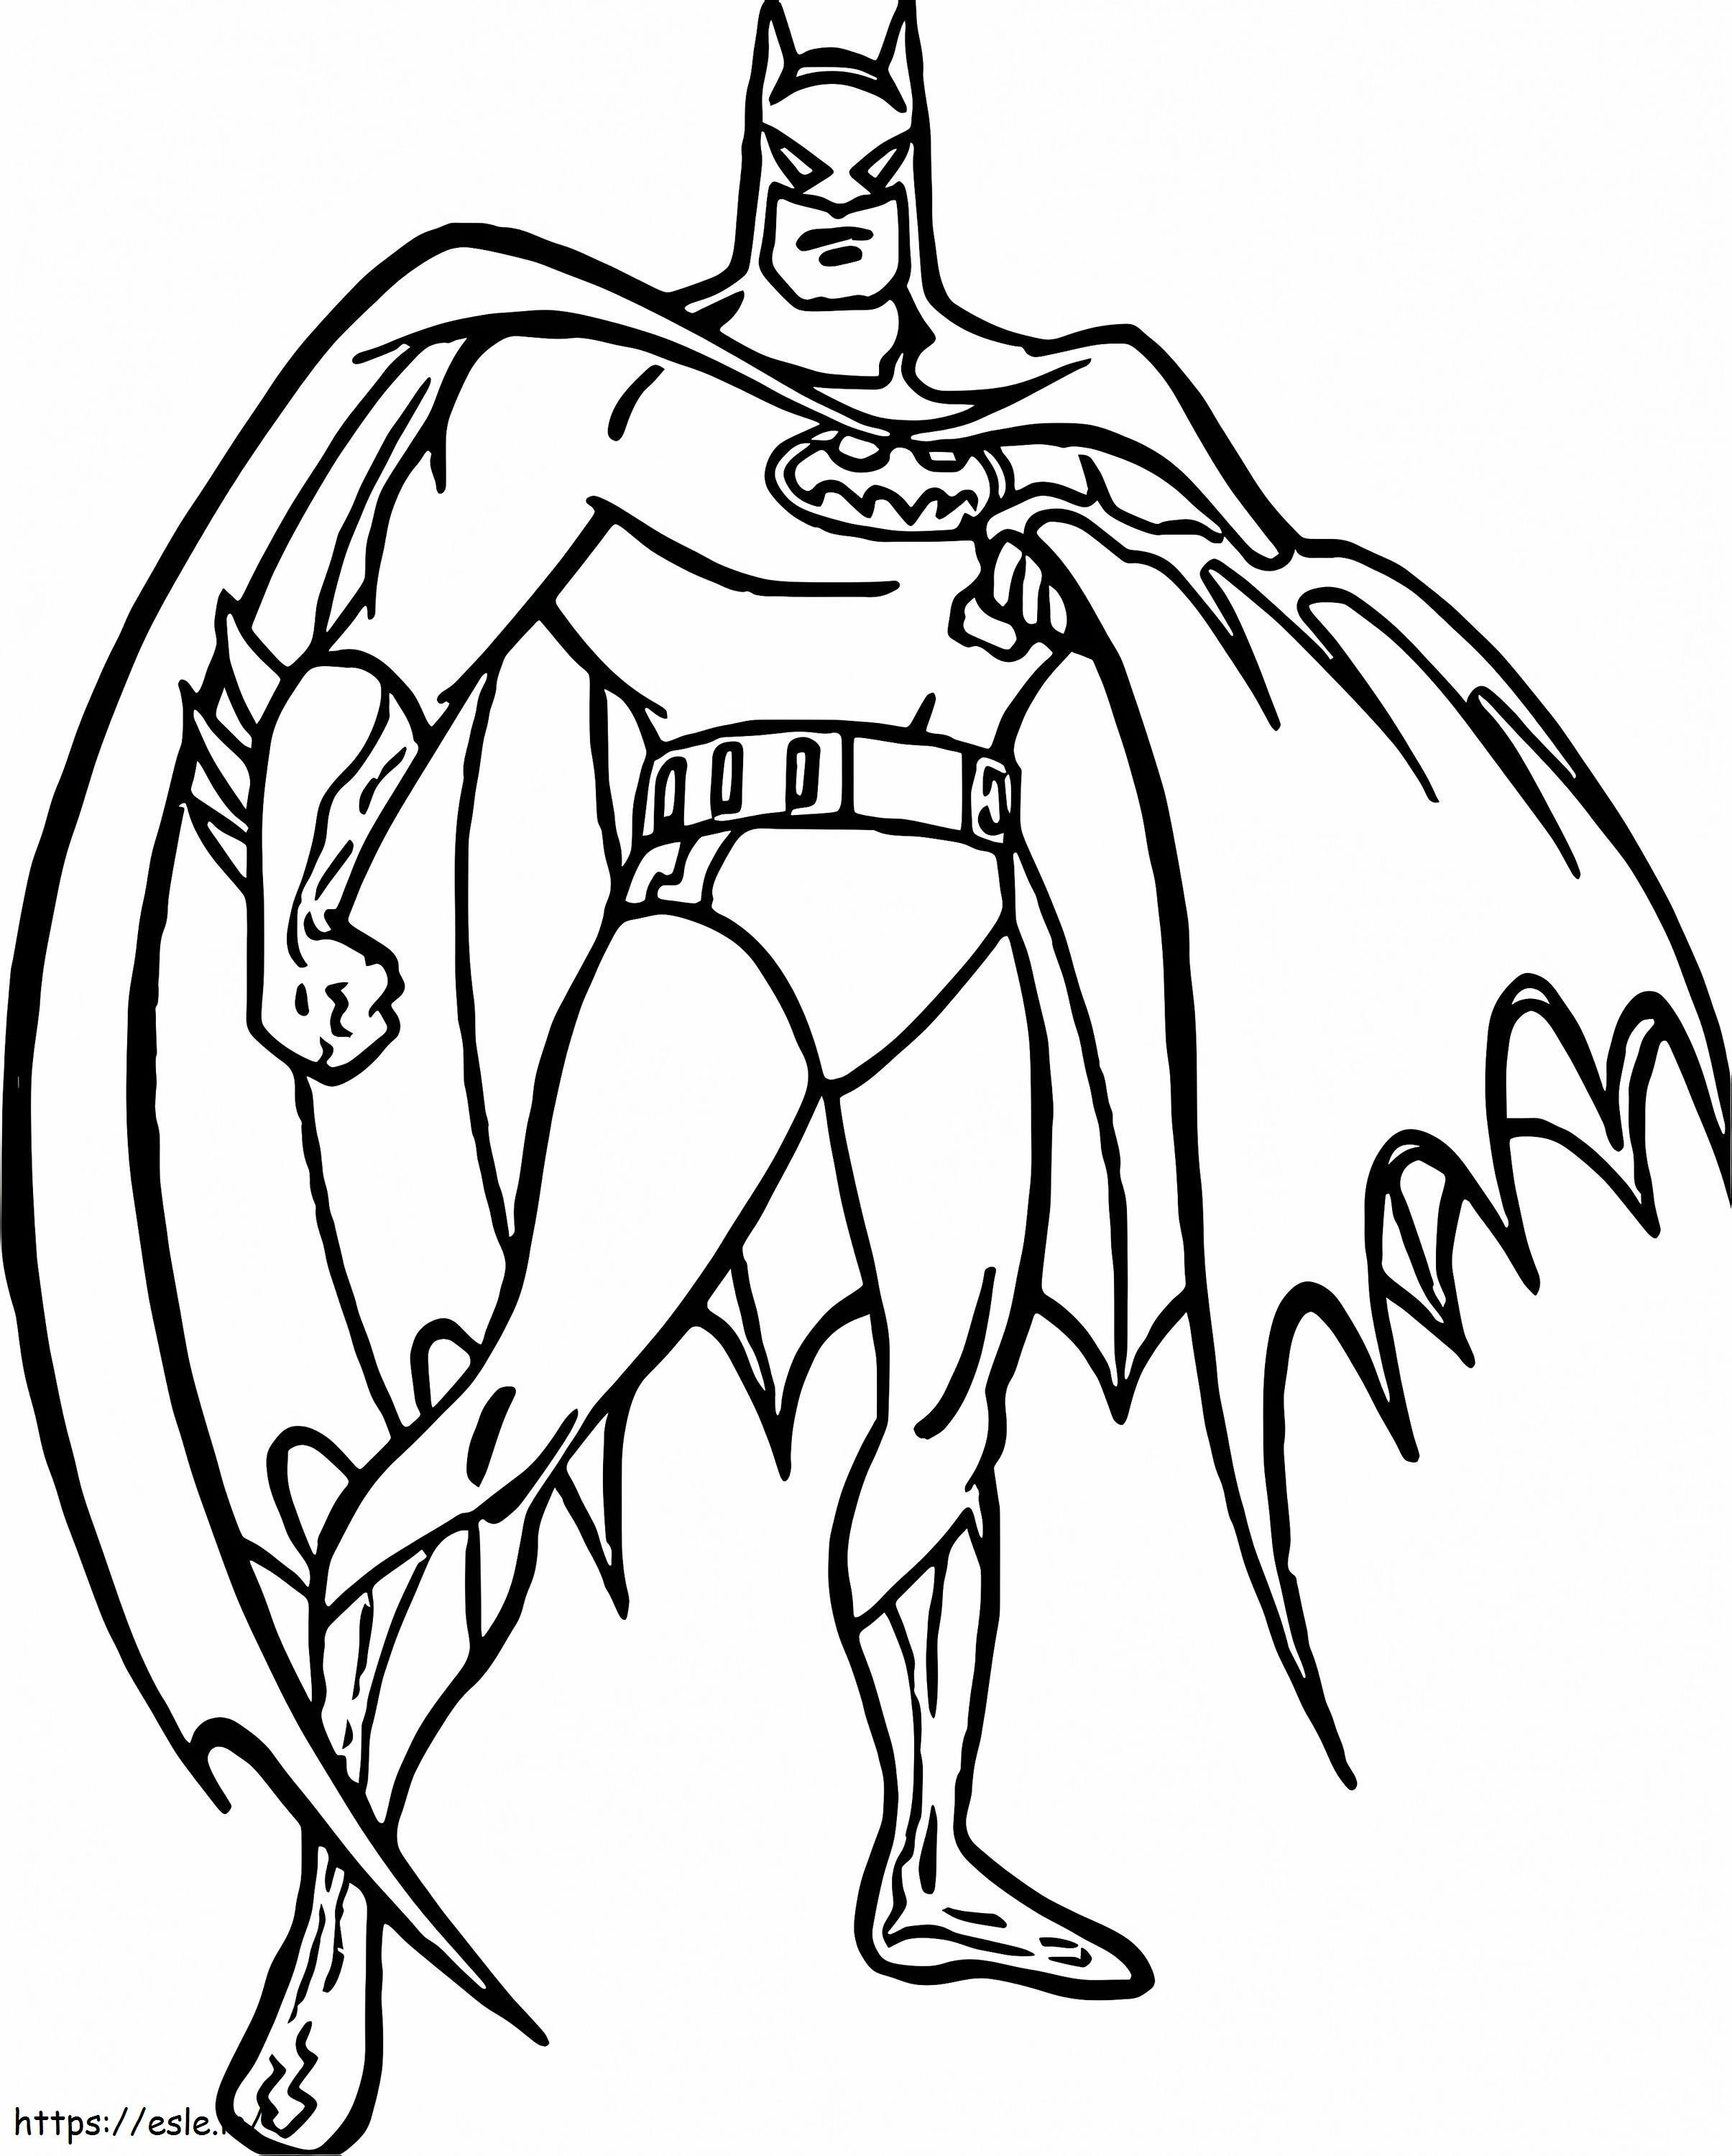 スーパーマンとバットマンの塗り絵 アイデアマン バレンタイン 優秀な輪郭ポーズ Wecoloringpage Days スケールされた探偵コミック ベスト コミック オールスター ロビン アート ブックが最初に組み込まれました ぬりえ - 塗り絵